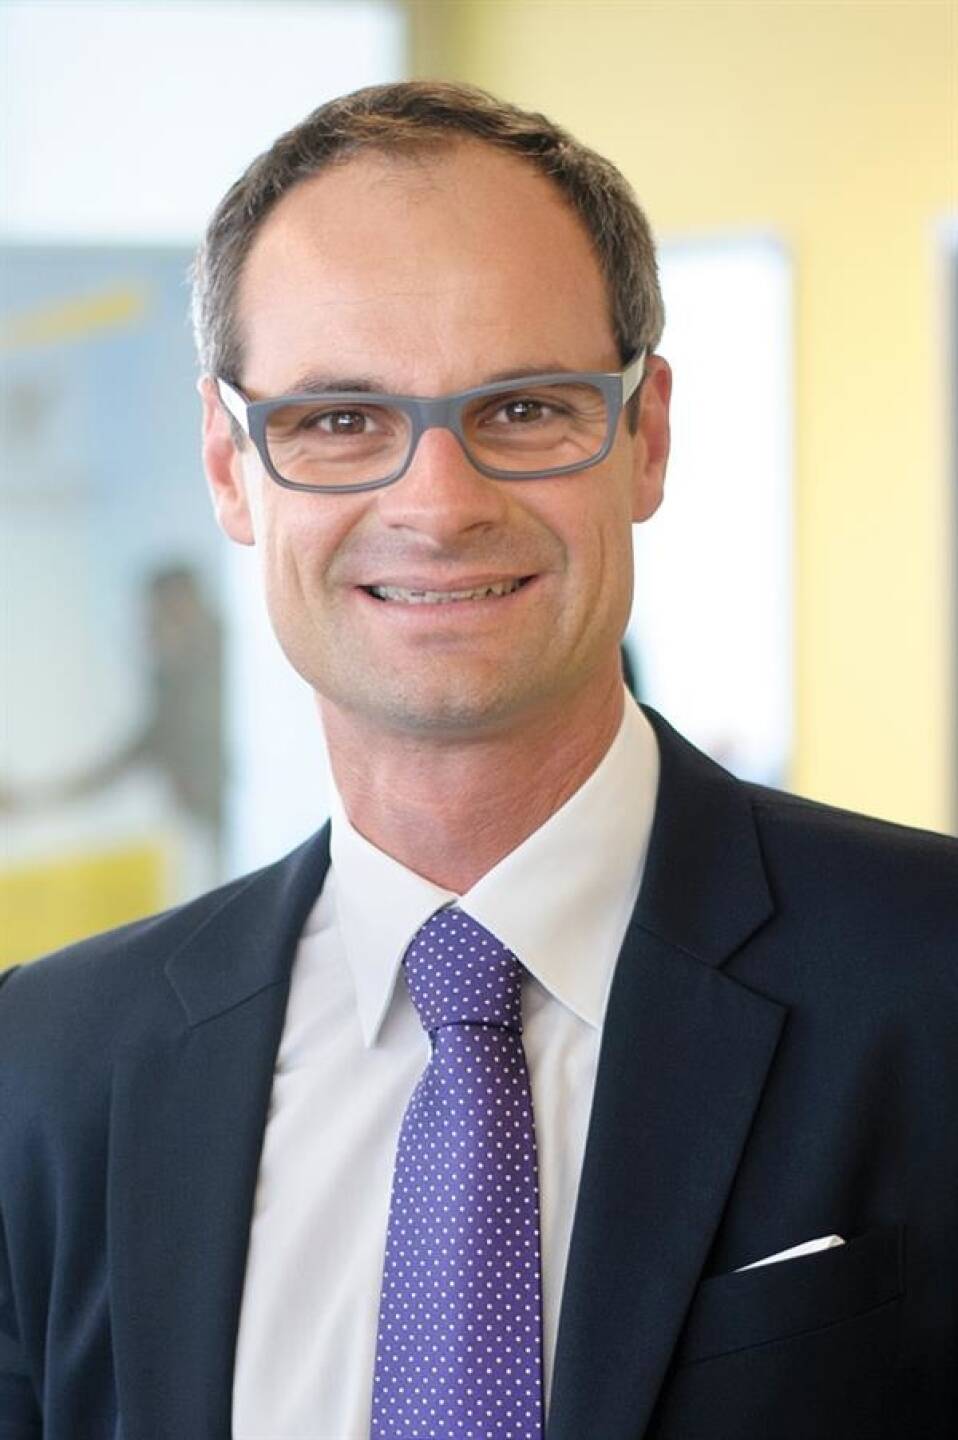 Robert Hufnagel wurde in die Partnerschaft von EY Österreich aufgenommen. Der gebürtige Oberösterreicher leitet seit 2012 als Geschäftsführer die M&A-Beratung bei EY Österreich. Er ist auf die Beratung grenzüberschreitender Transaktionen für nationale und internationale Unternehmen spezialisiert. Bild: EY